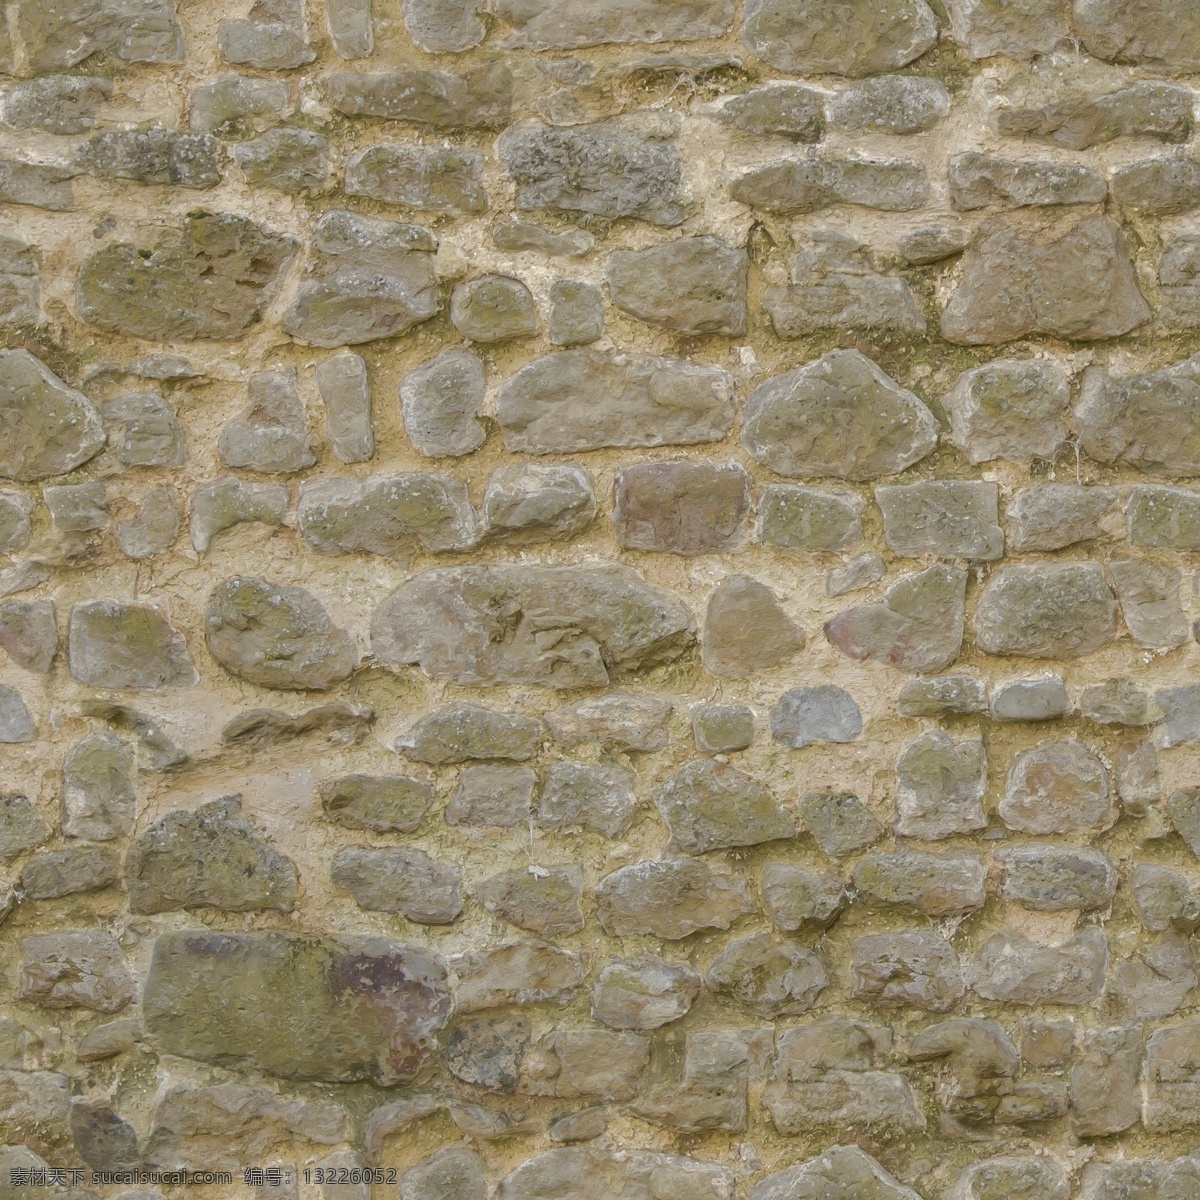 石砖材质 石砖类材质 石砖贴图 石砖 石砖素材 石砖纹理 石砖图片 材质 贴图 砖纹